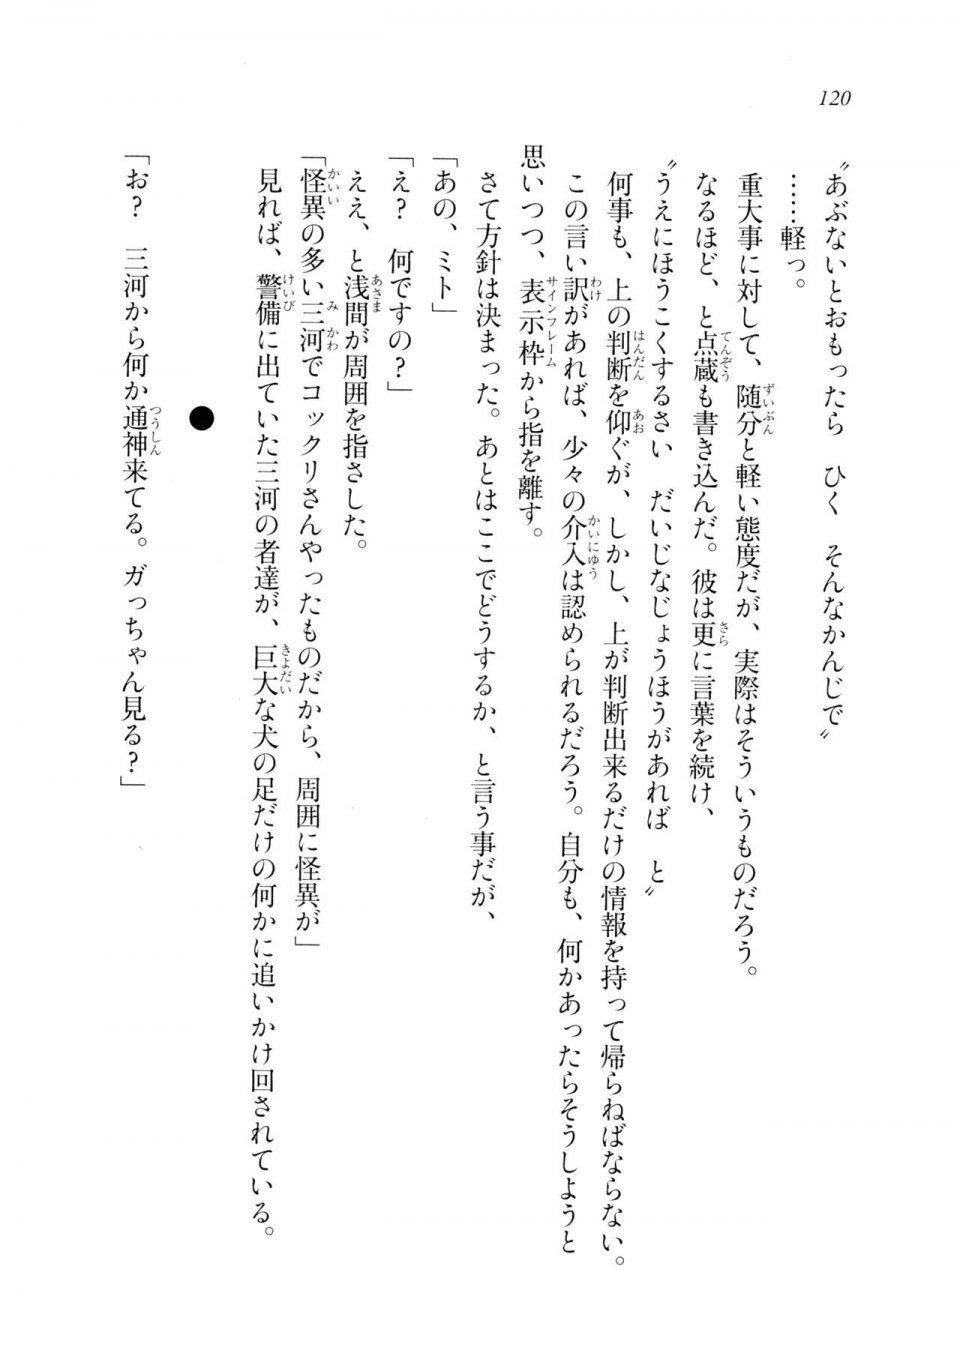 Kyoukai Senjou no Horizon LN Sidestory Vol 2 - Photo #118